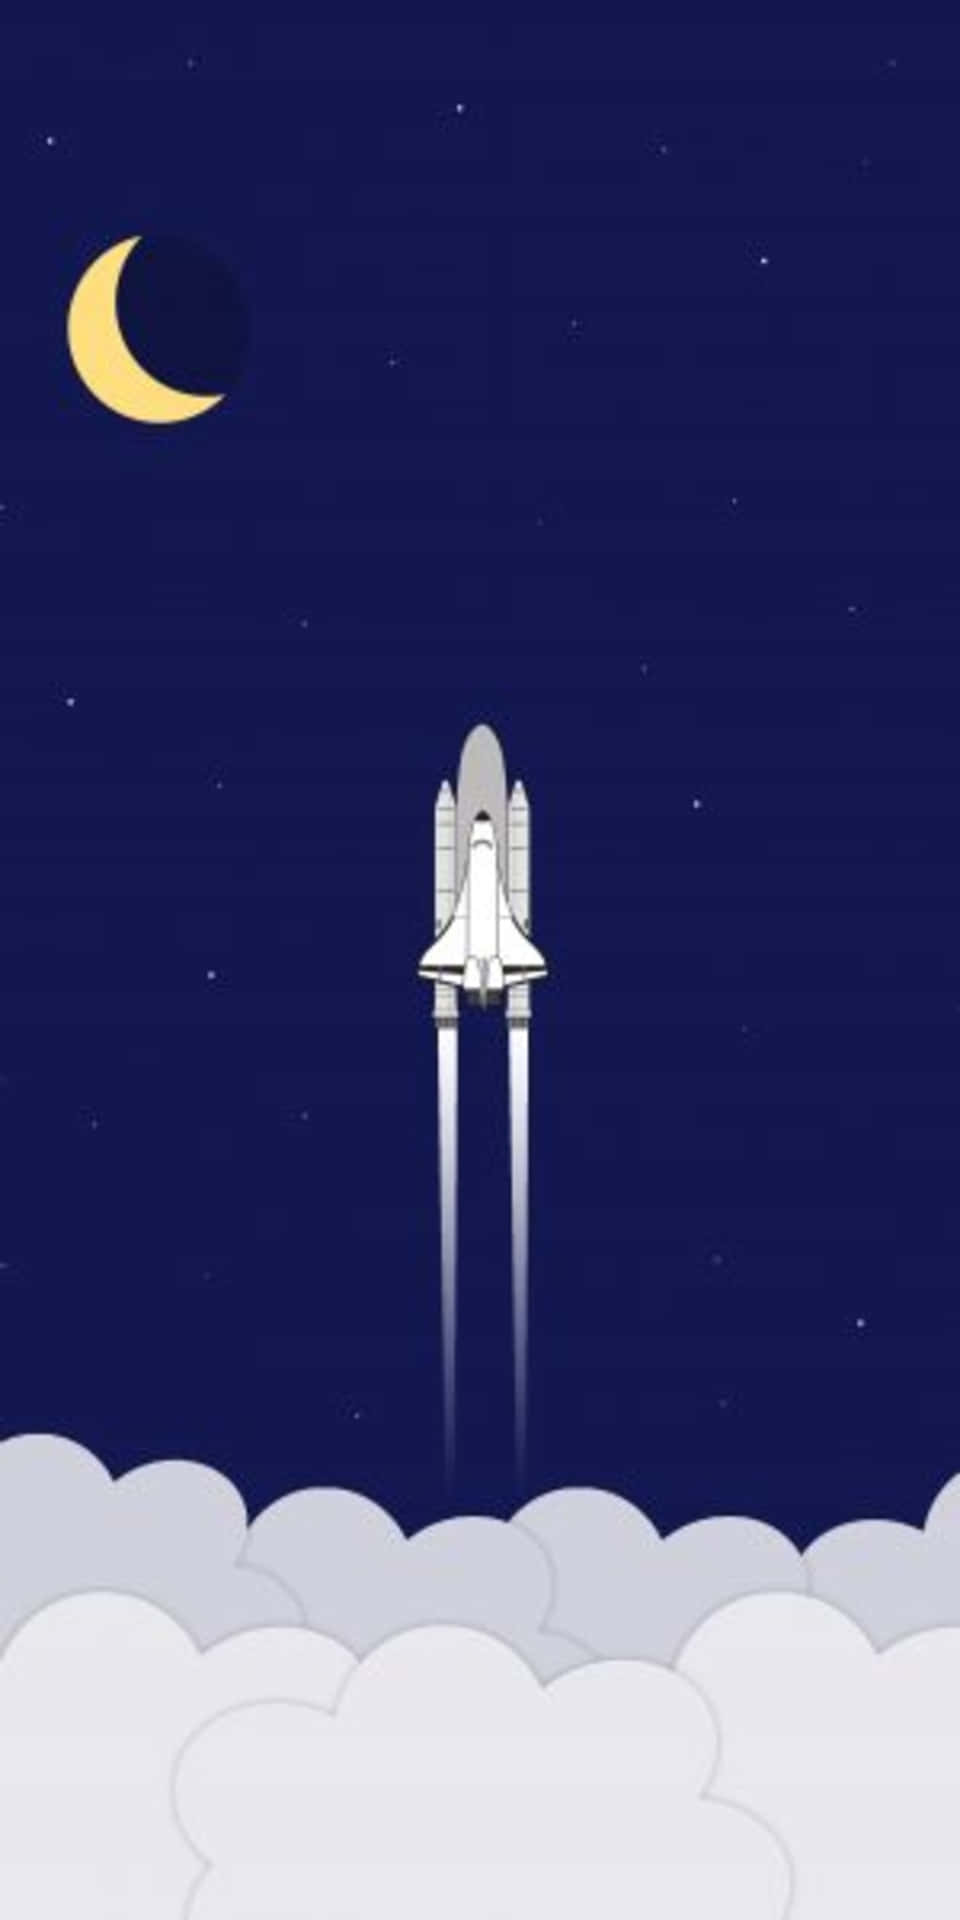 Fondominimalista Del Pixel 3 Con Una Nave Espacial Yendo Al Espacio.